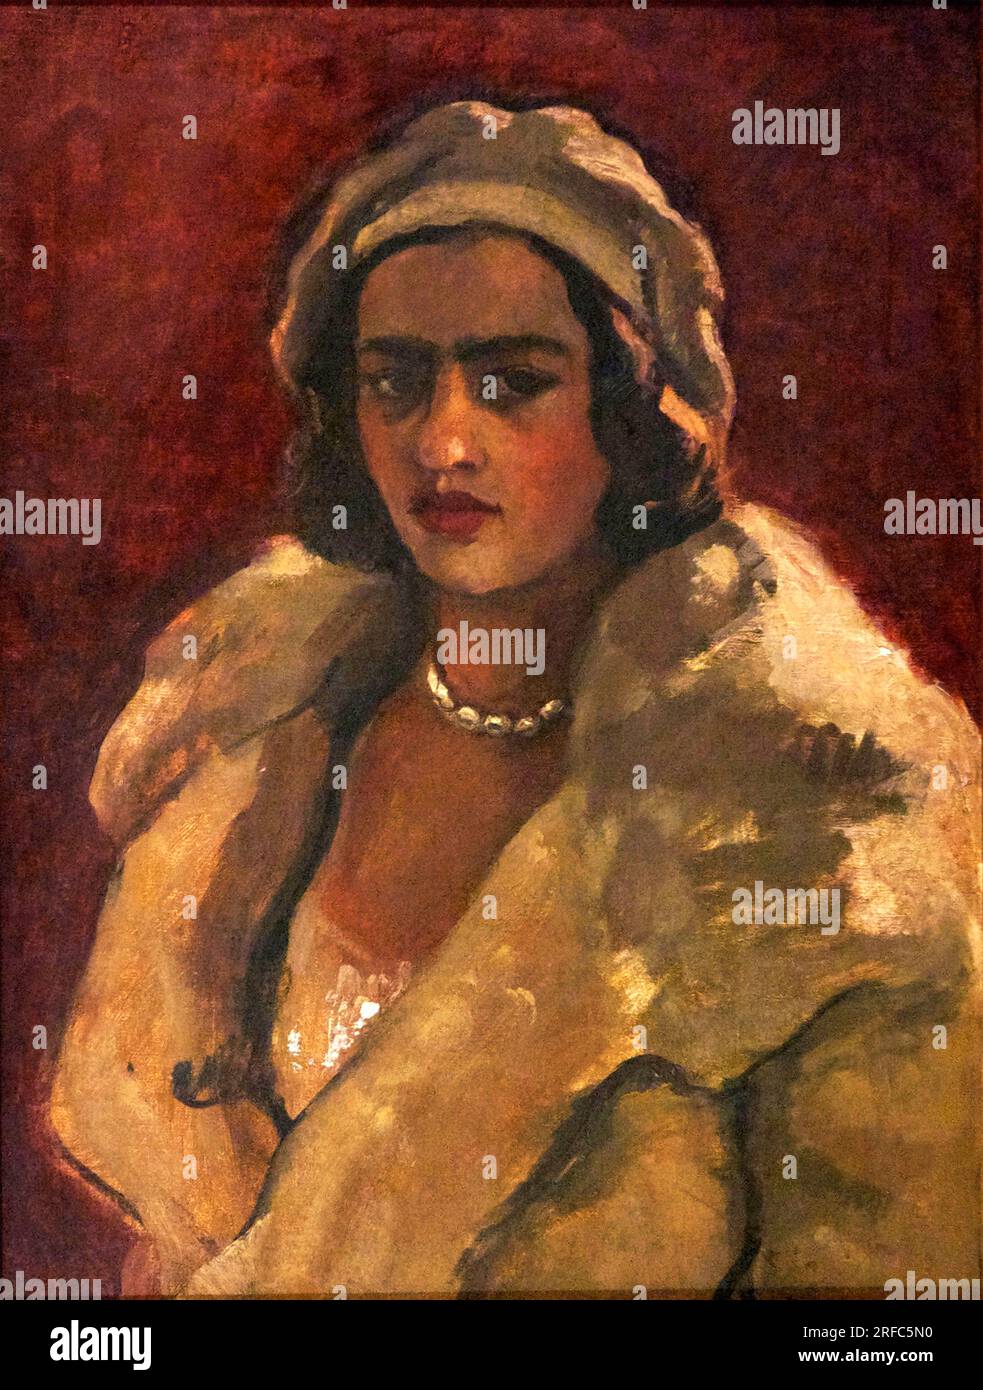 Autoportrait (9) de l'artiste hongroise-indienne Amrita Sher-Gil (1913-1941), huile sur toile, 1930 Banque D'Images